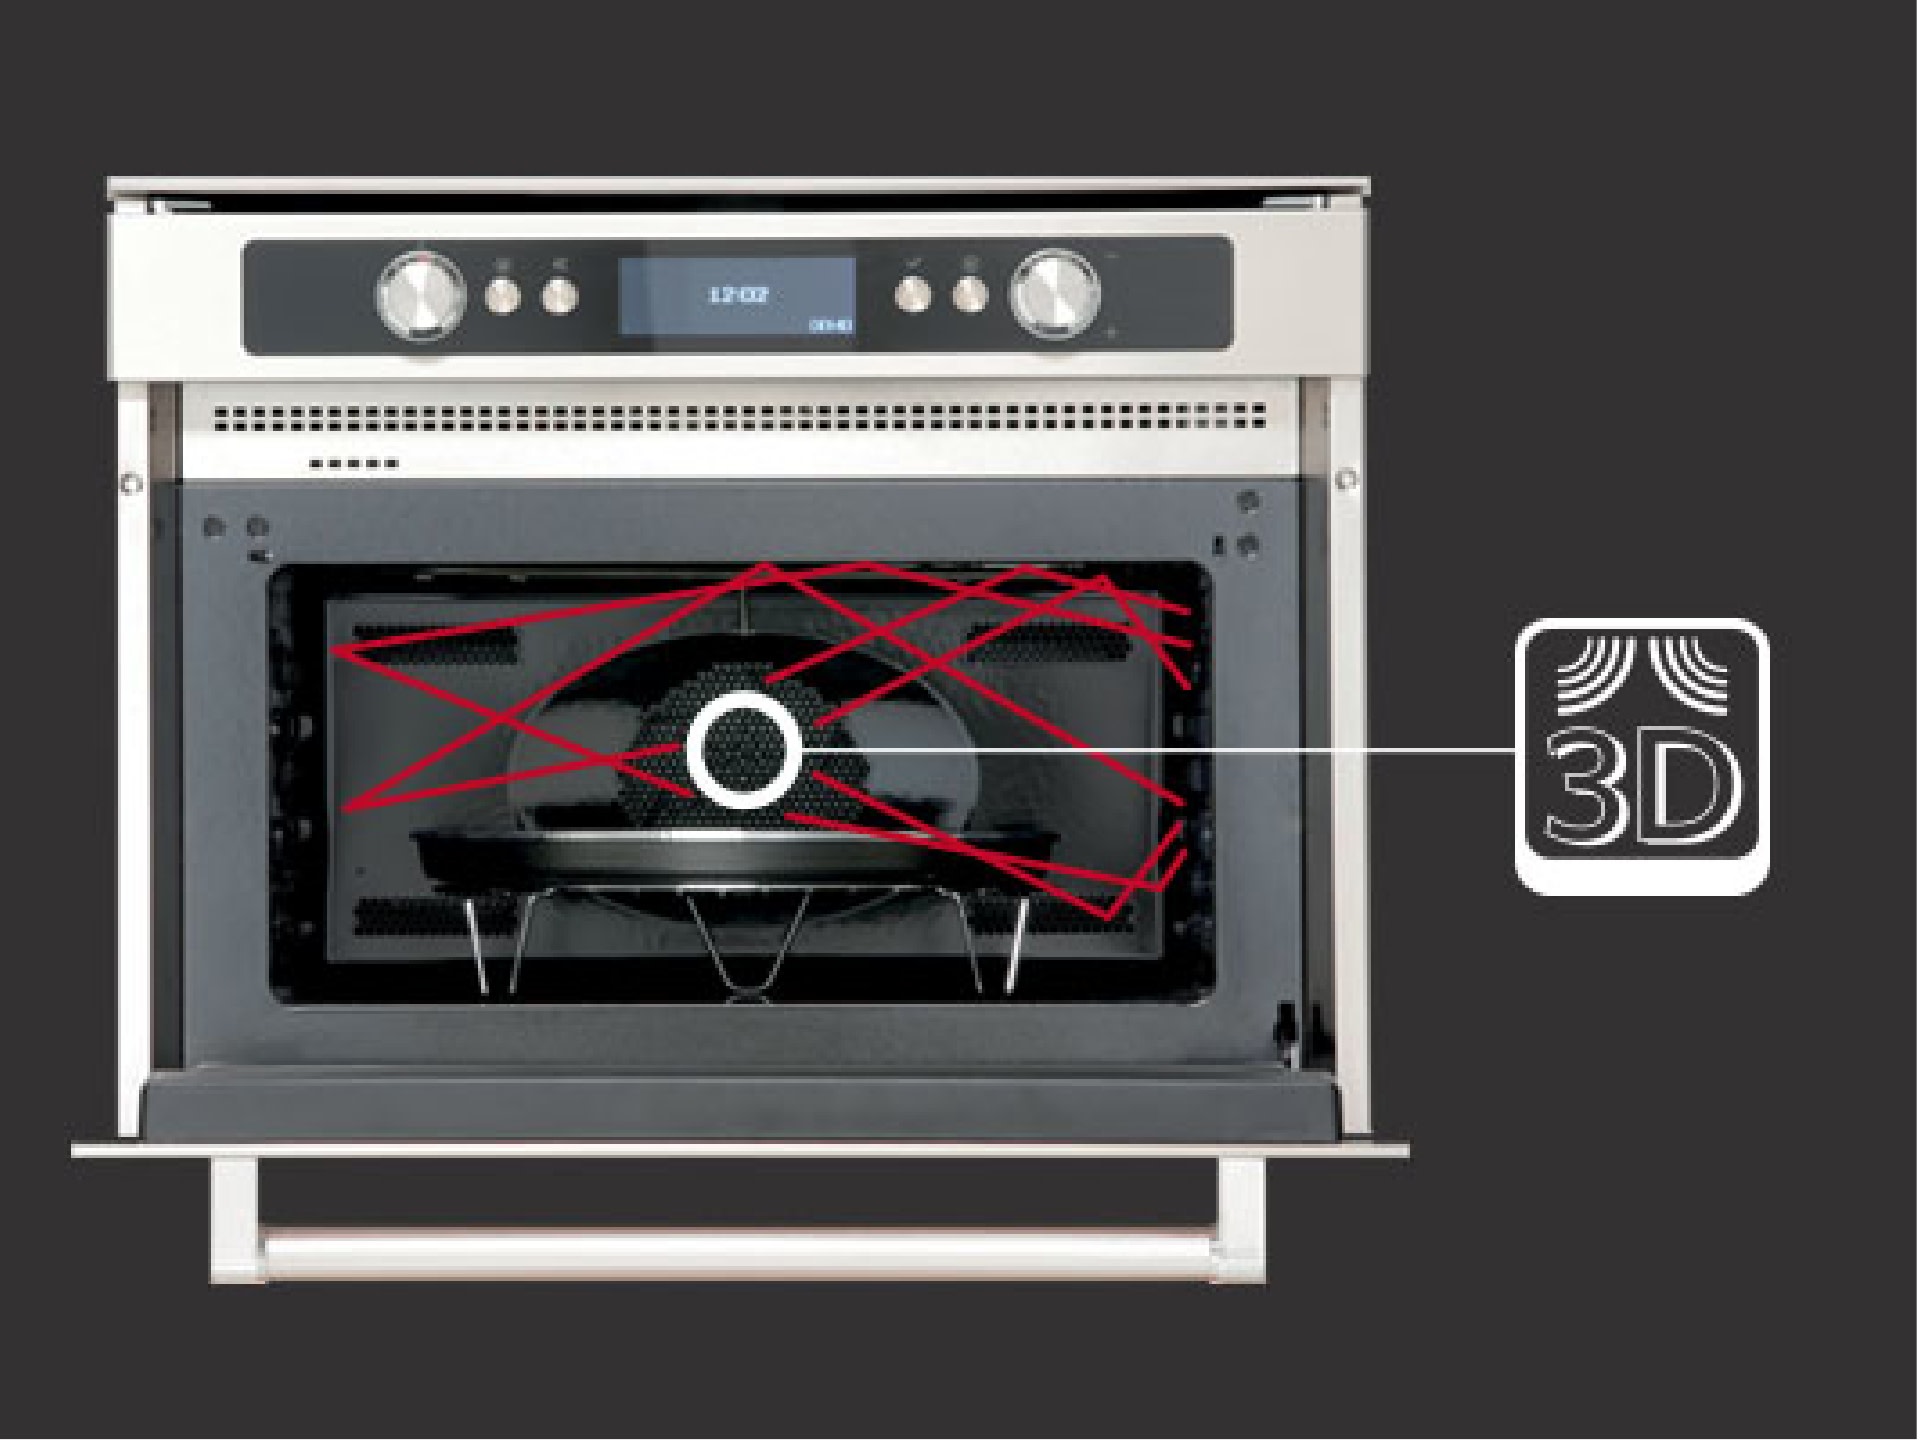 3D-cooking-oven-schema